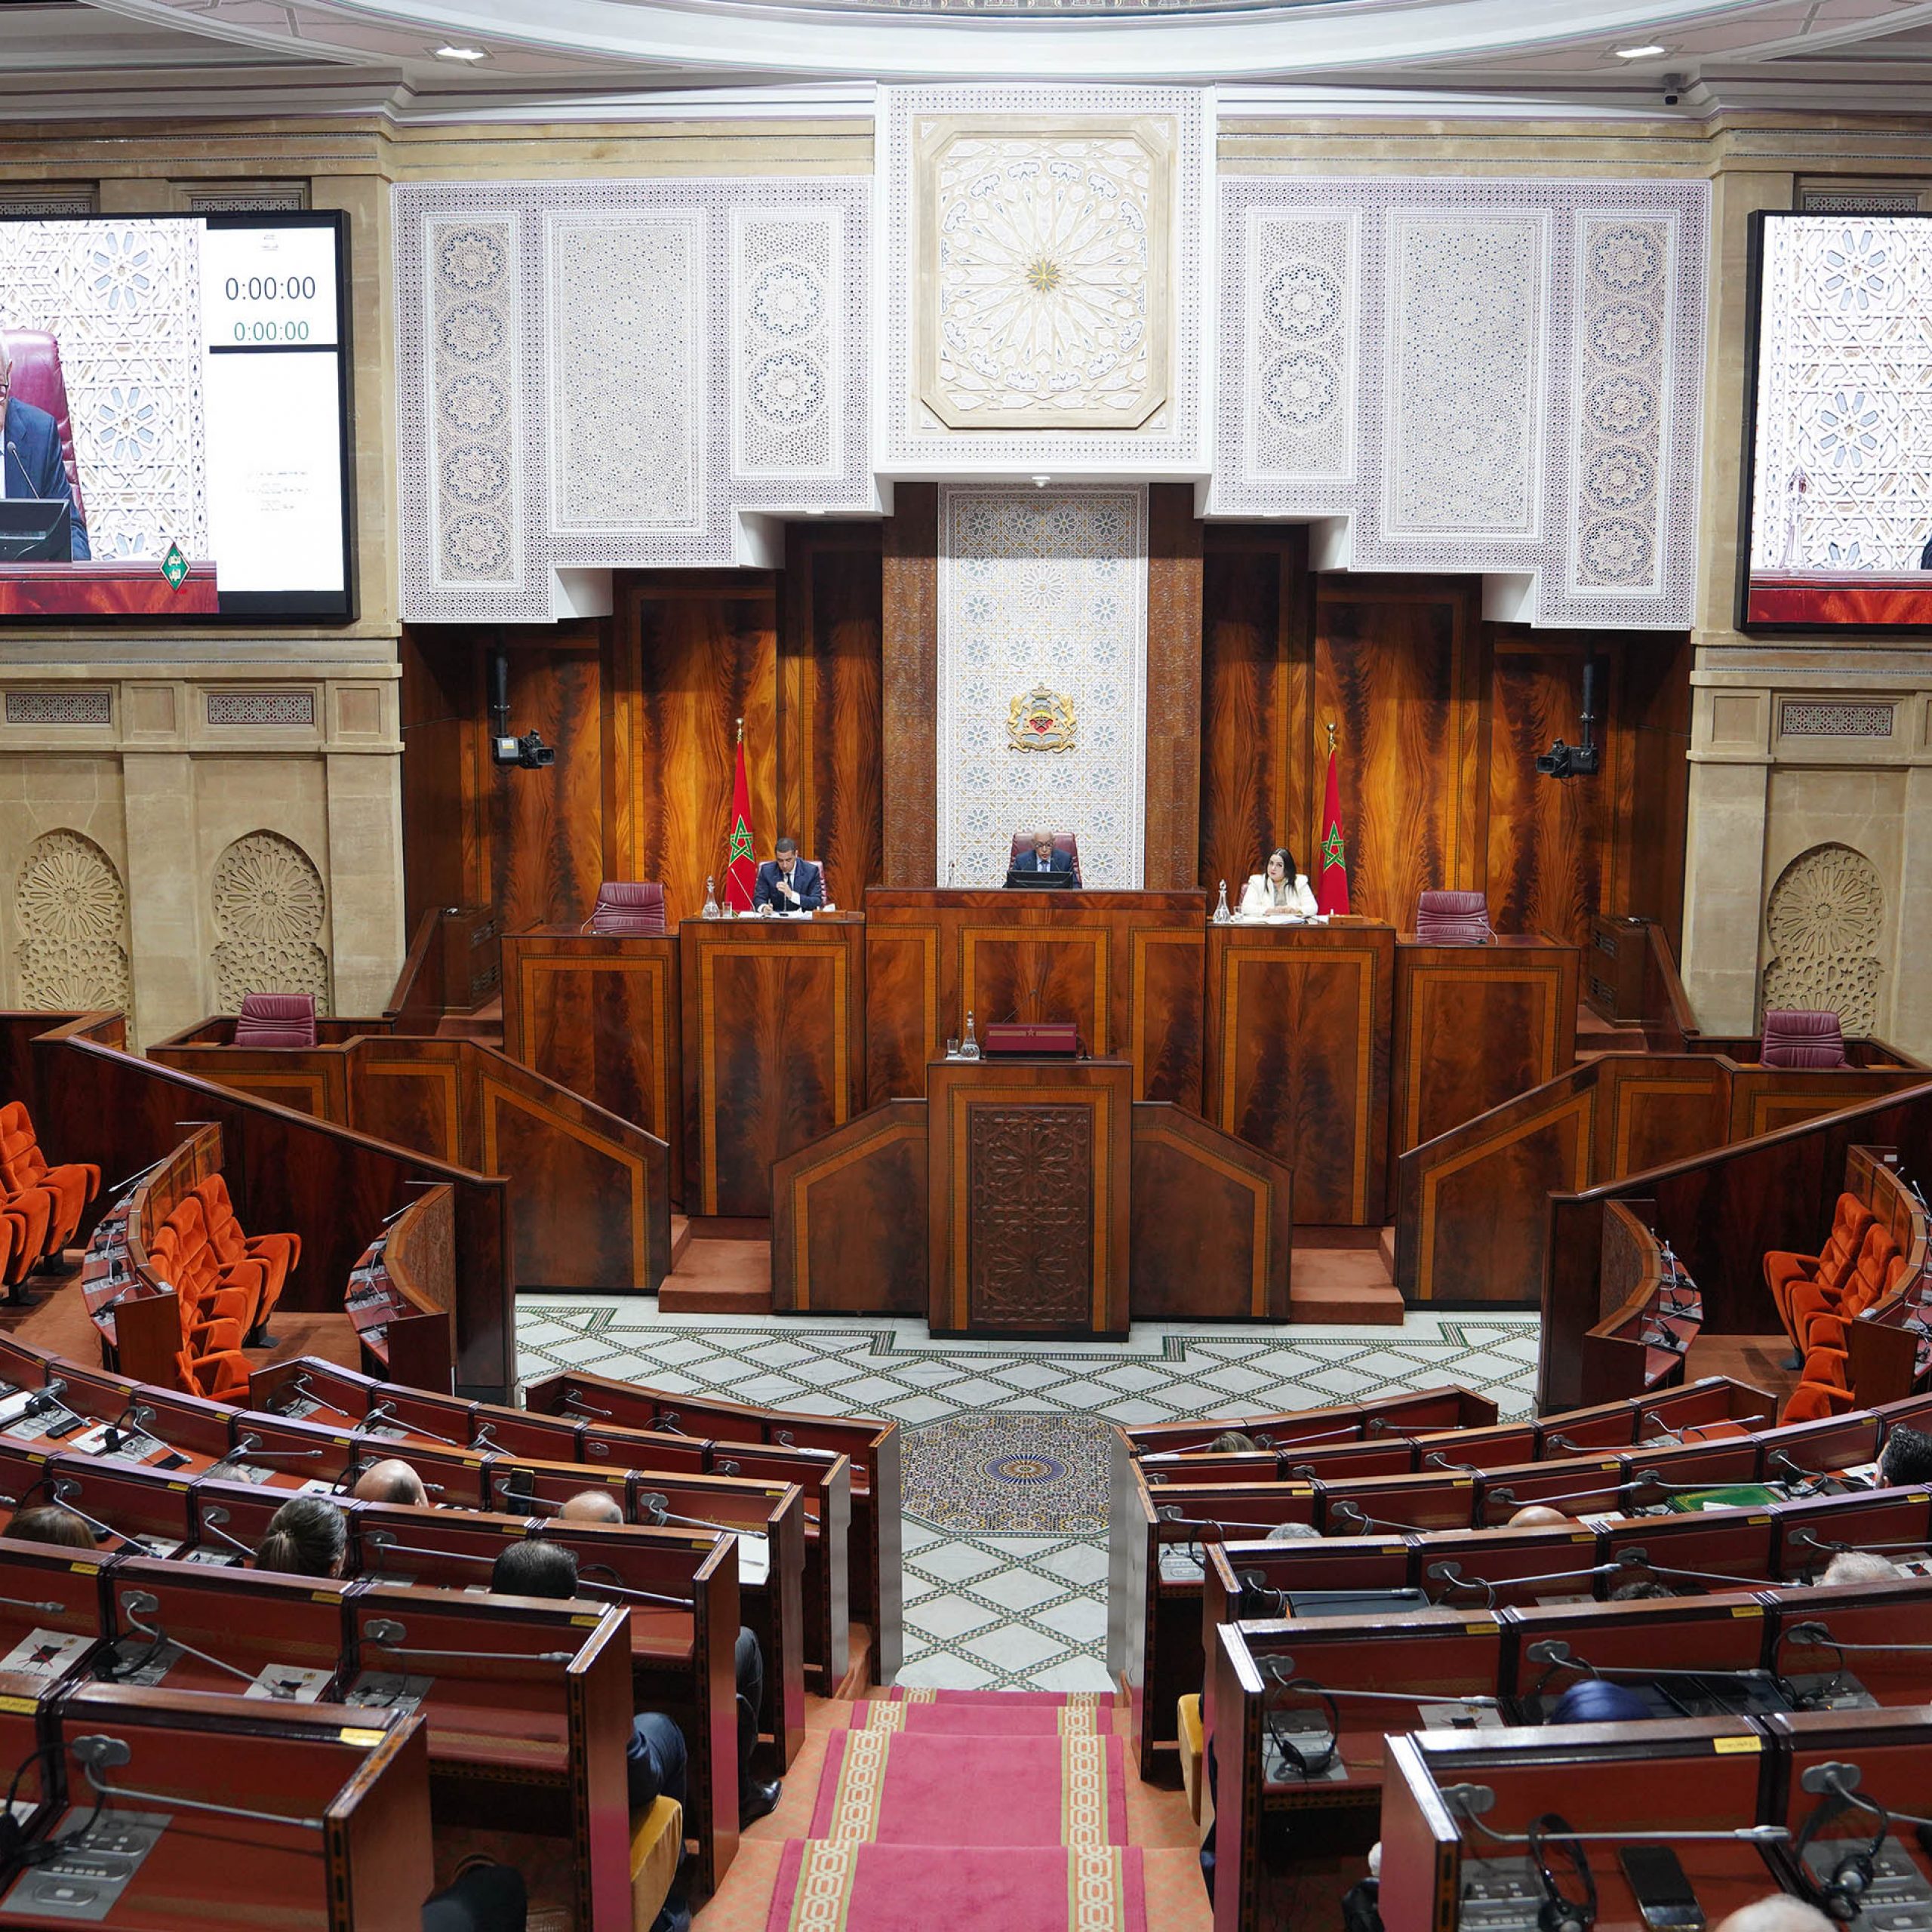 البرلمان المغربي يرد على الهجمة الصارخة و يُحدث لجنة موضوعاتية لإعادة تقييم العلاقات مع البرلمان الأوربي